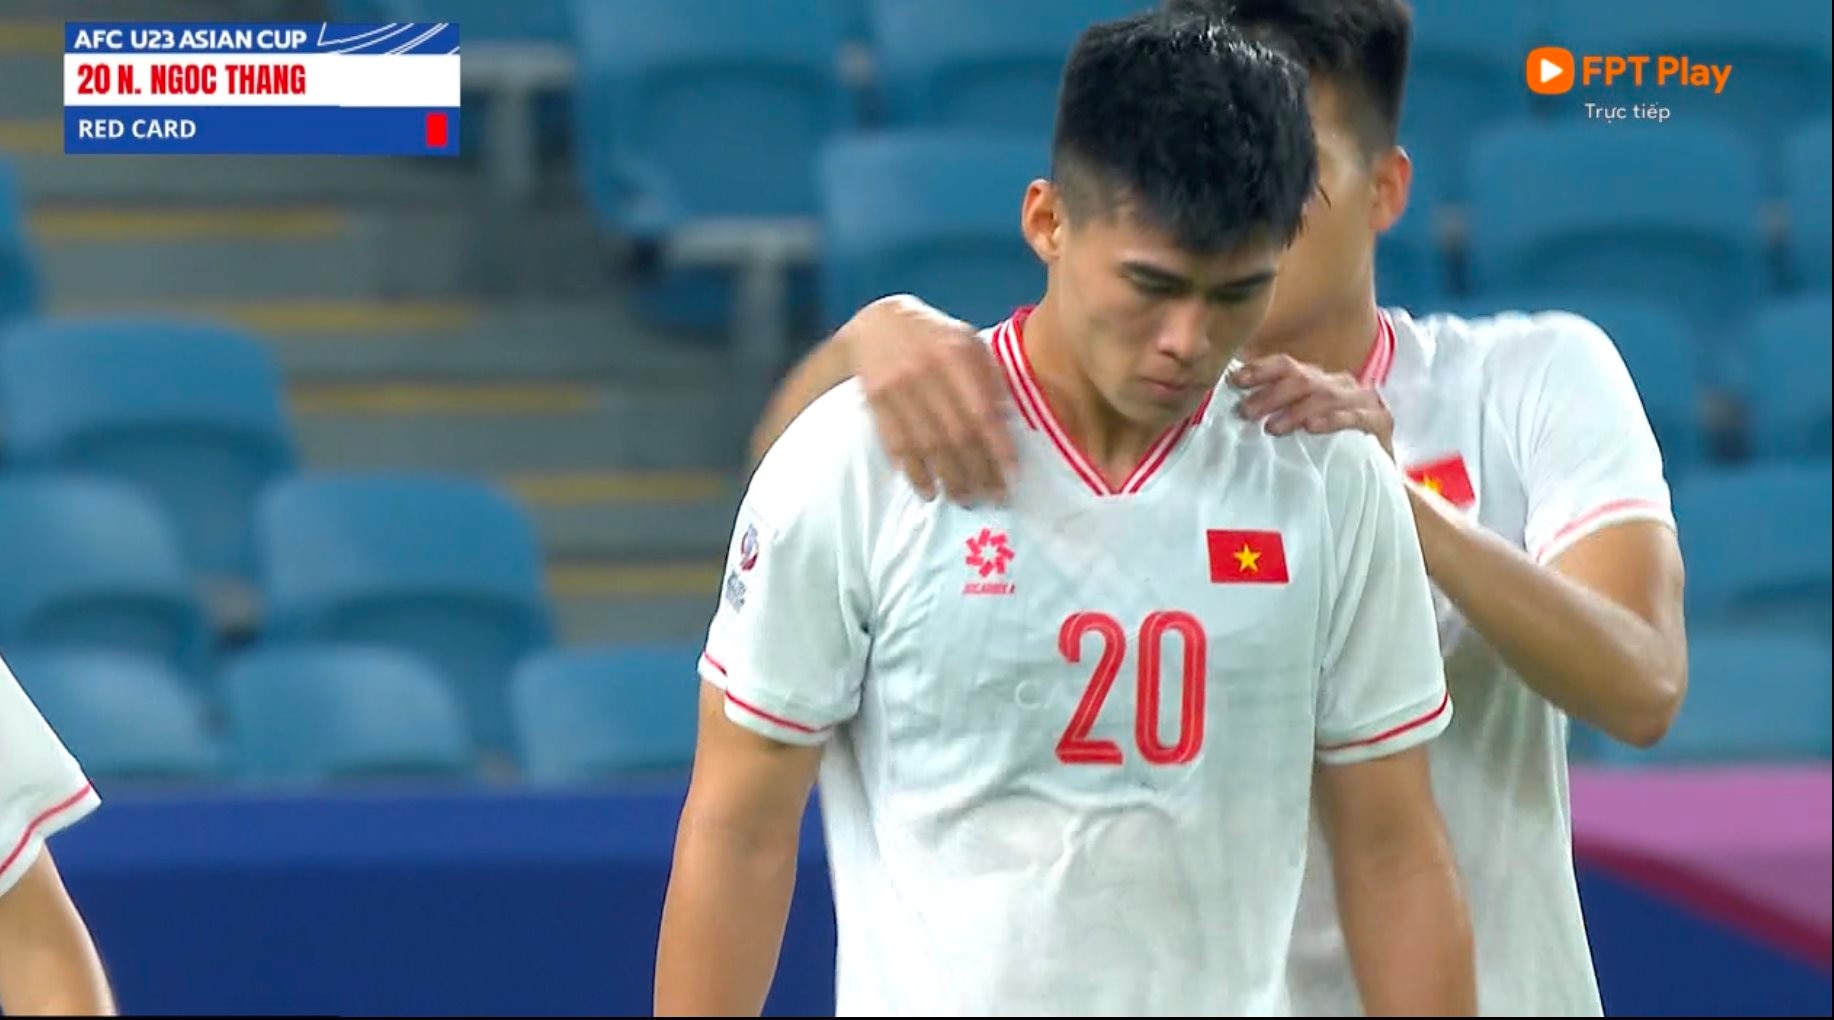 Tấm thẻ đỏ của Ngọc Thắng khiến U.23 Việt Nam đánh mất lợi thế vừa có trong hiệp 1